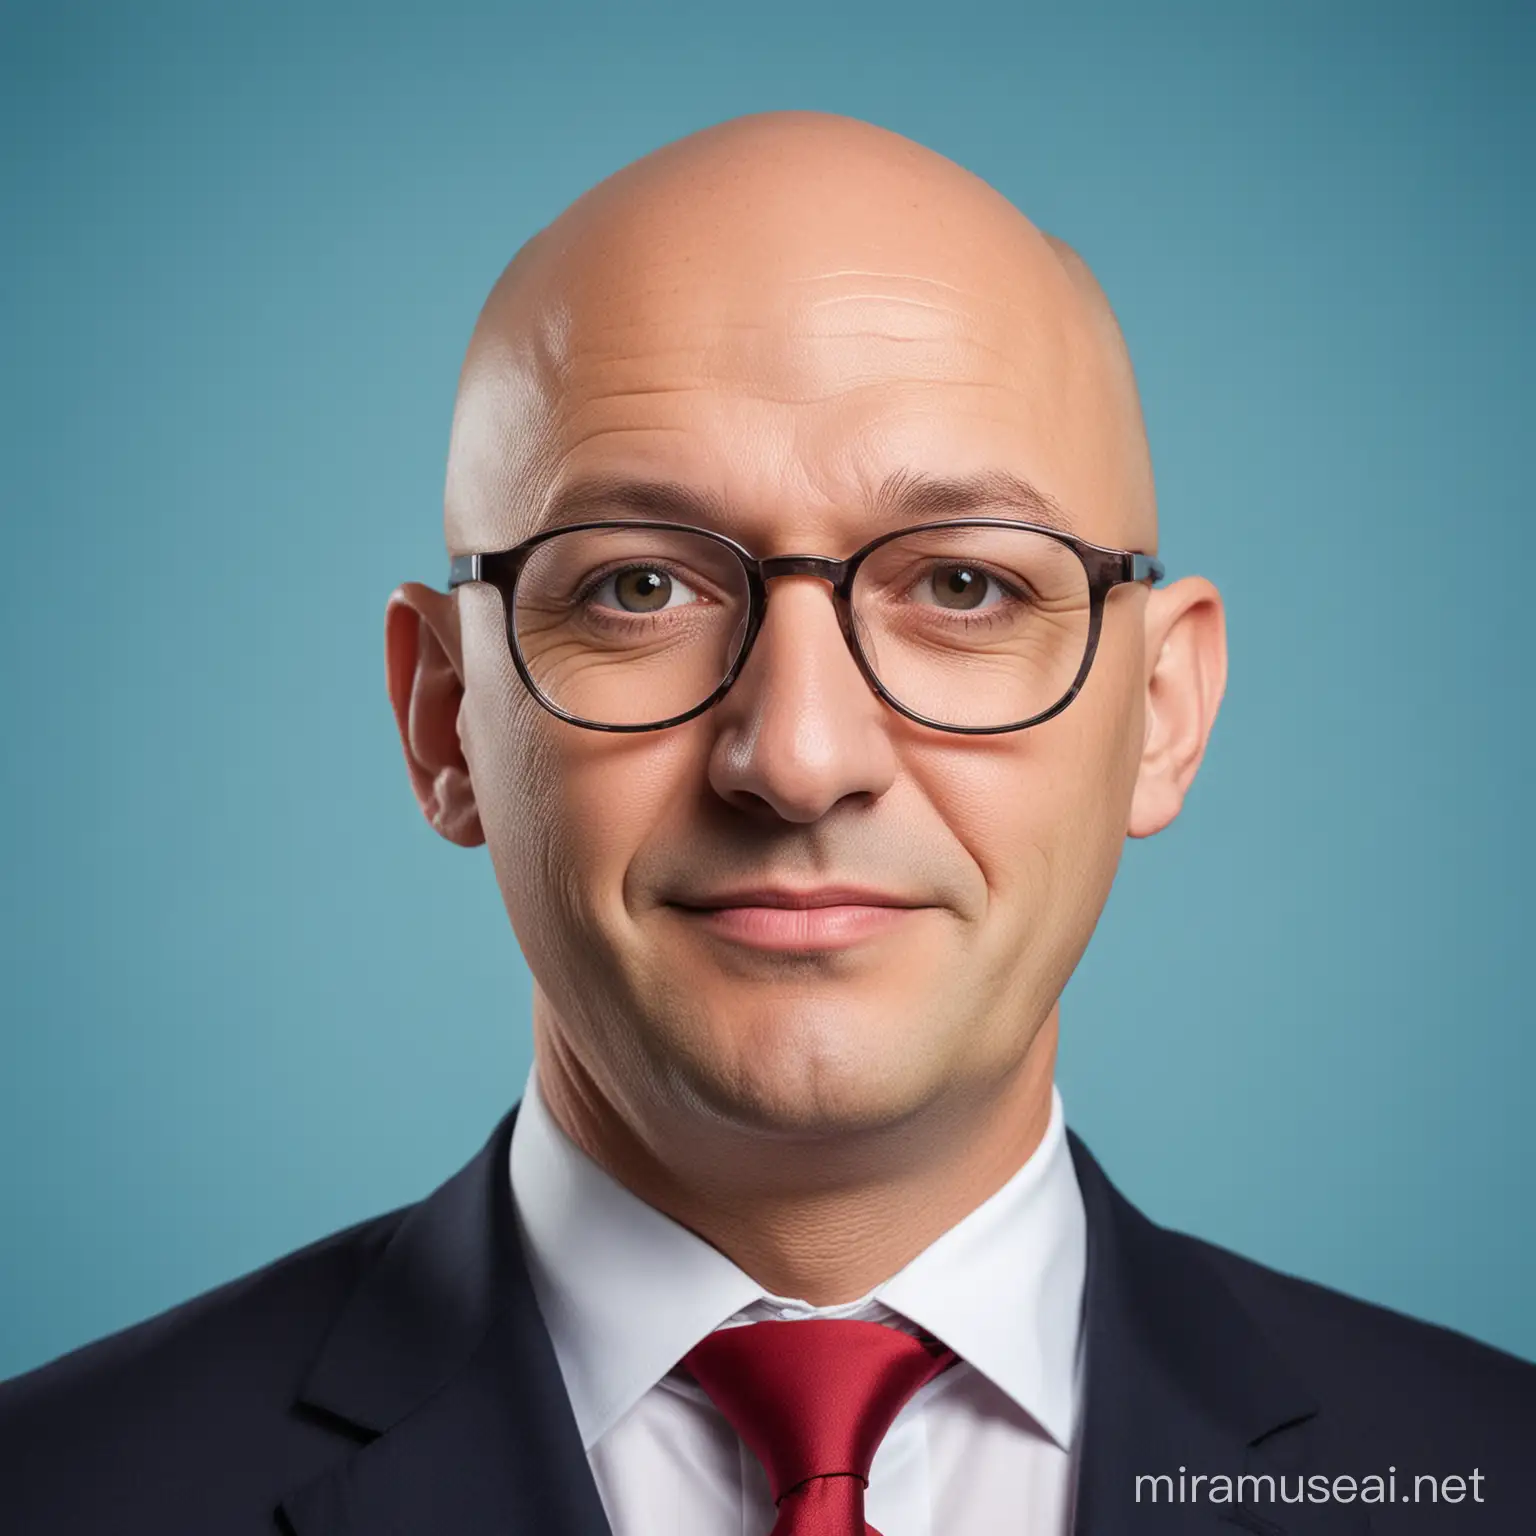 Político hombre con cara redonda calvo con gafas pequeñas con fondo azul